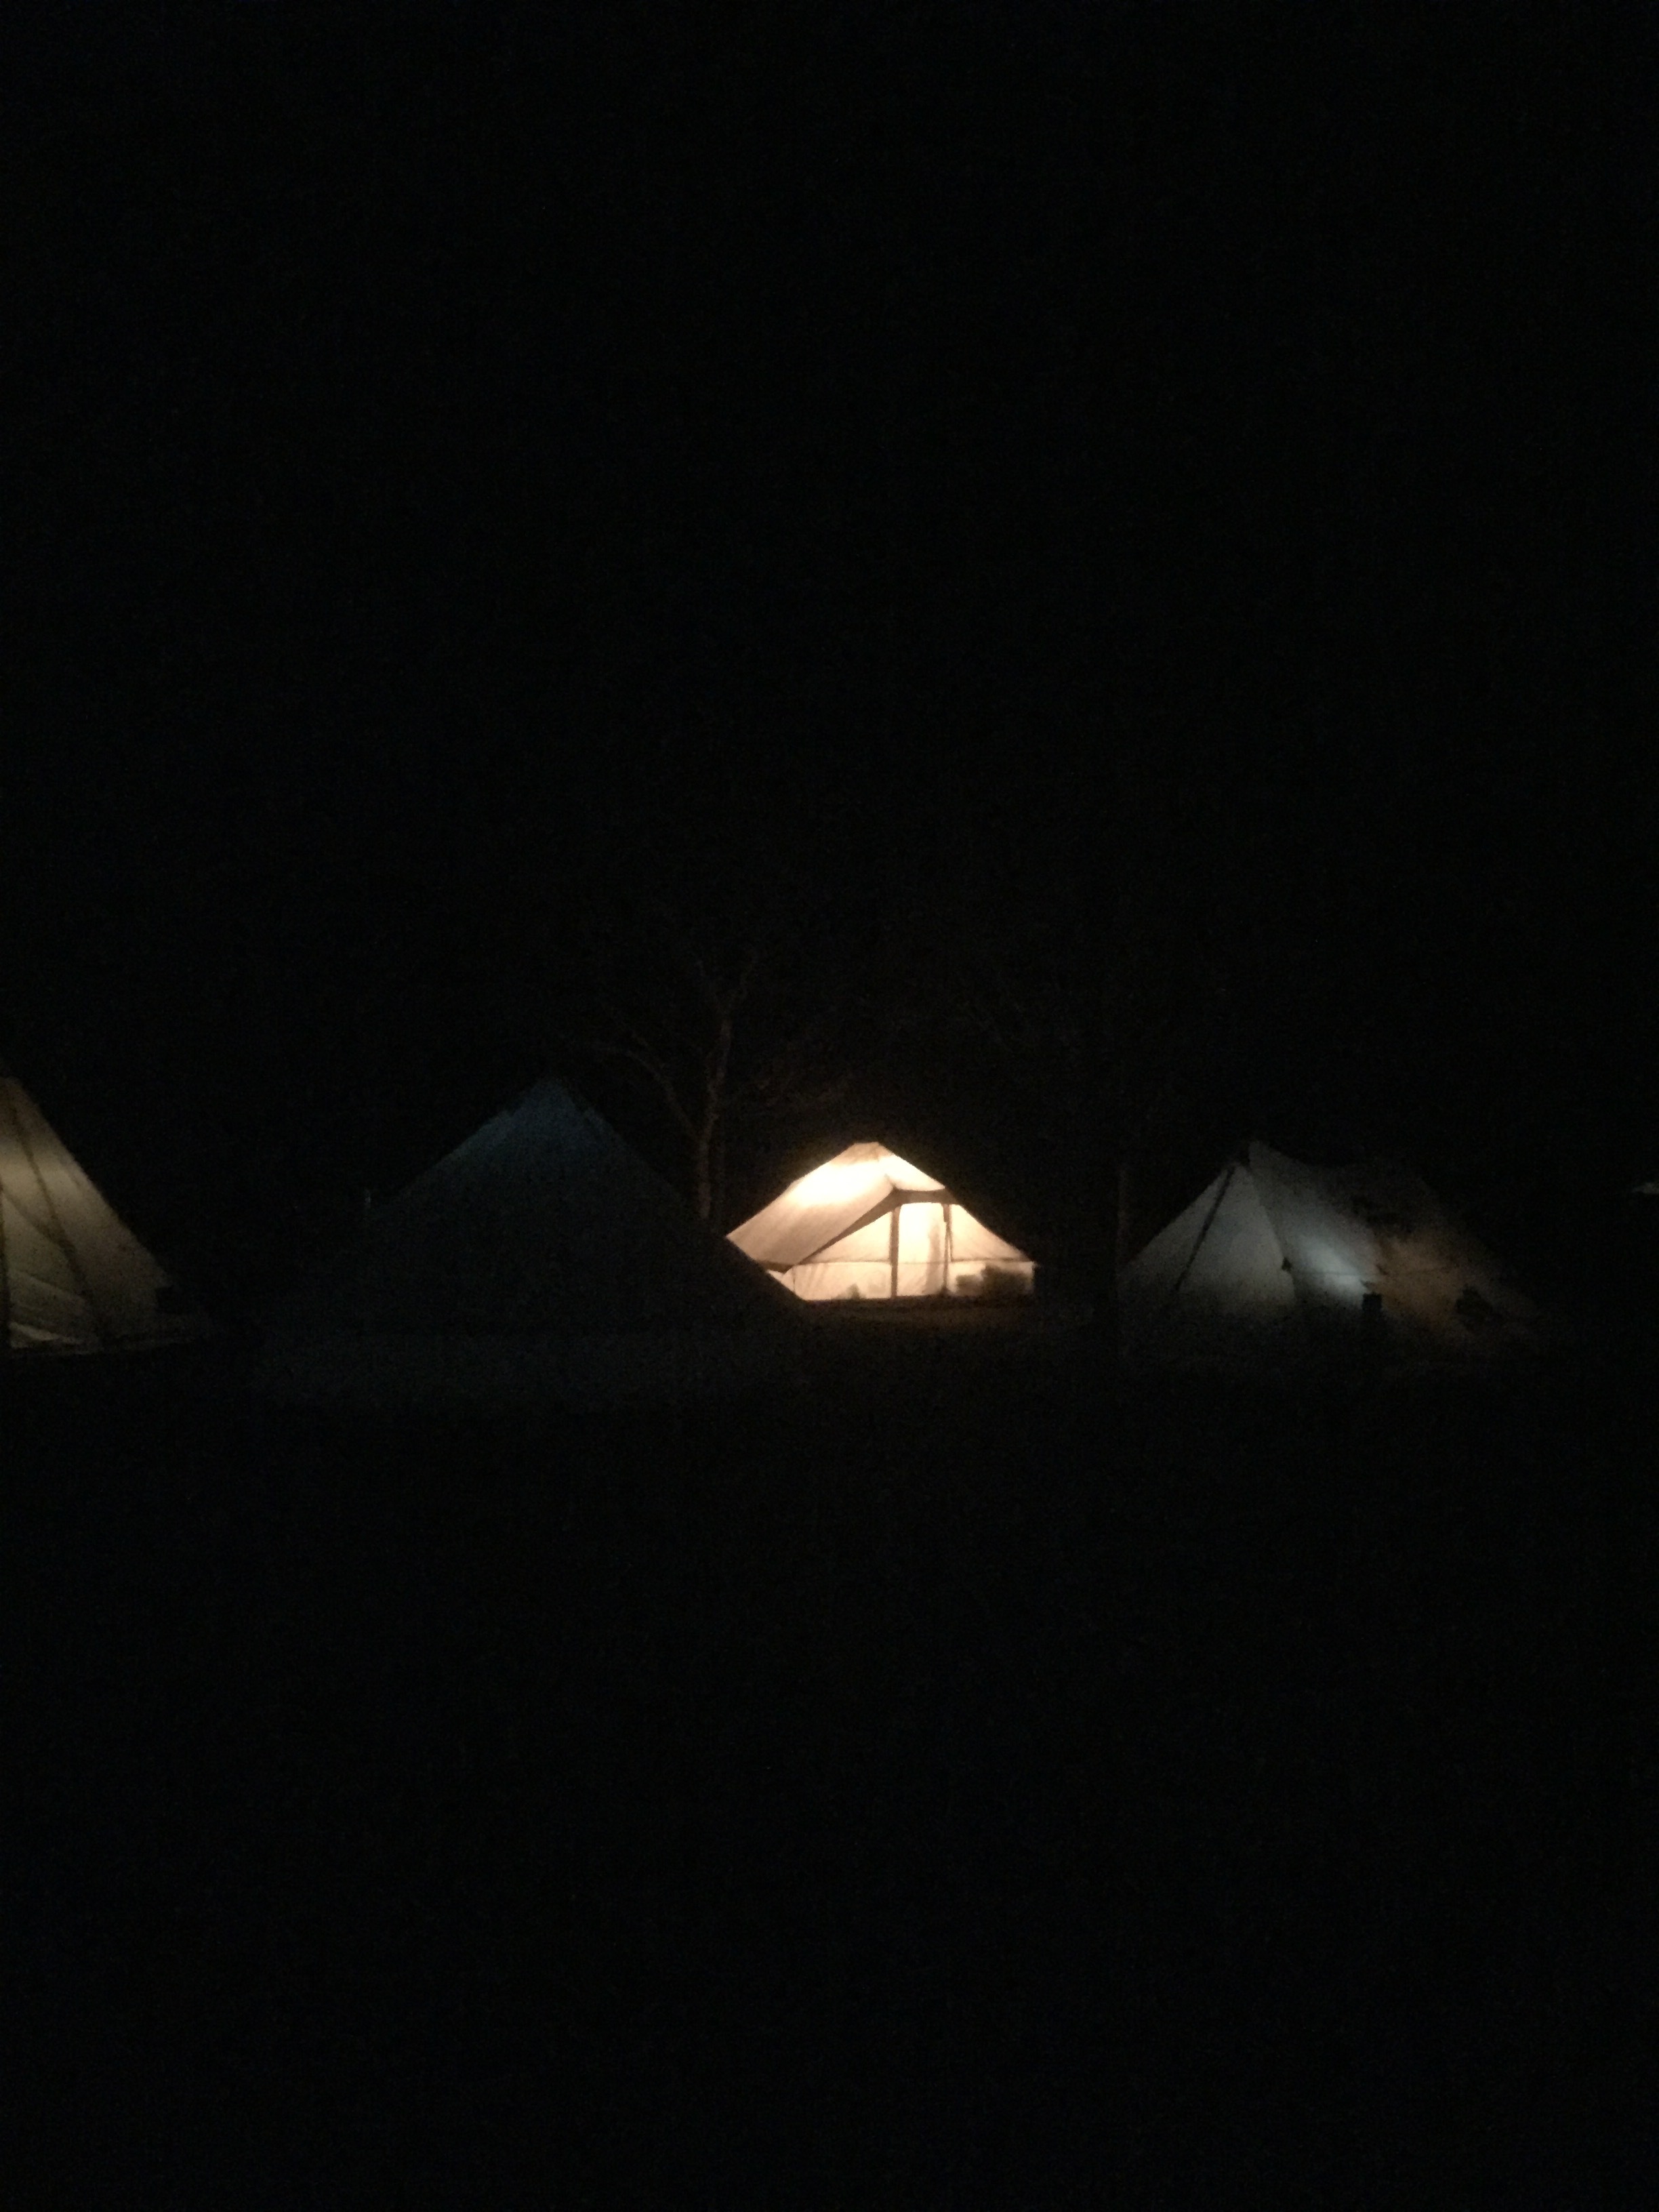 初年越しキャンプはかずさオートキャンプ場です